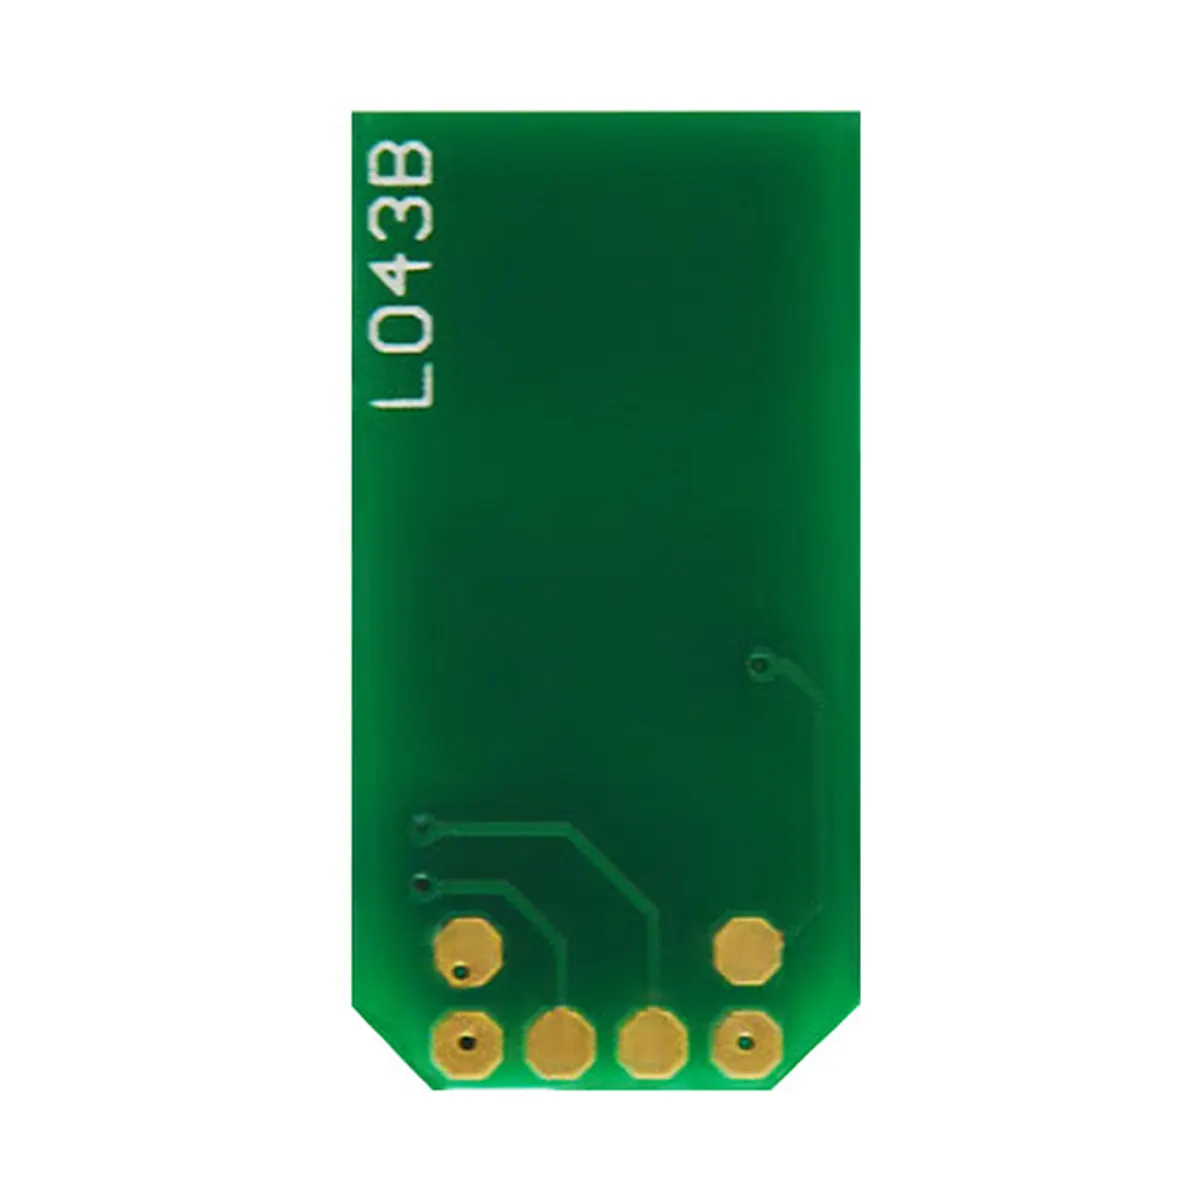 Chips cartucho de tóner láser para OKI-Data MC 362 DN chips láser chip contador inteligente